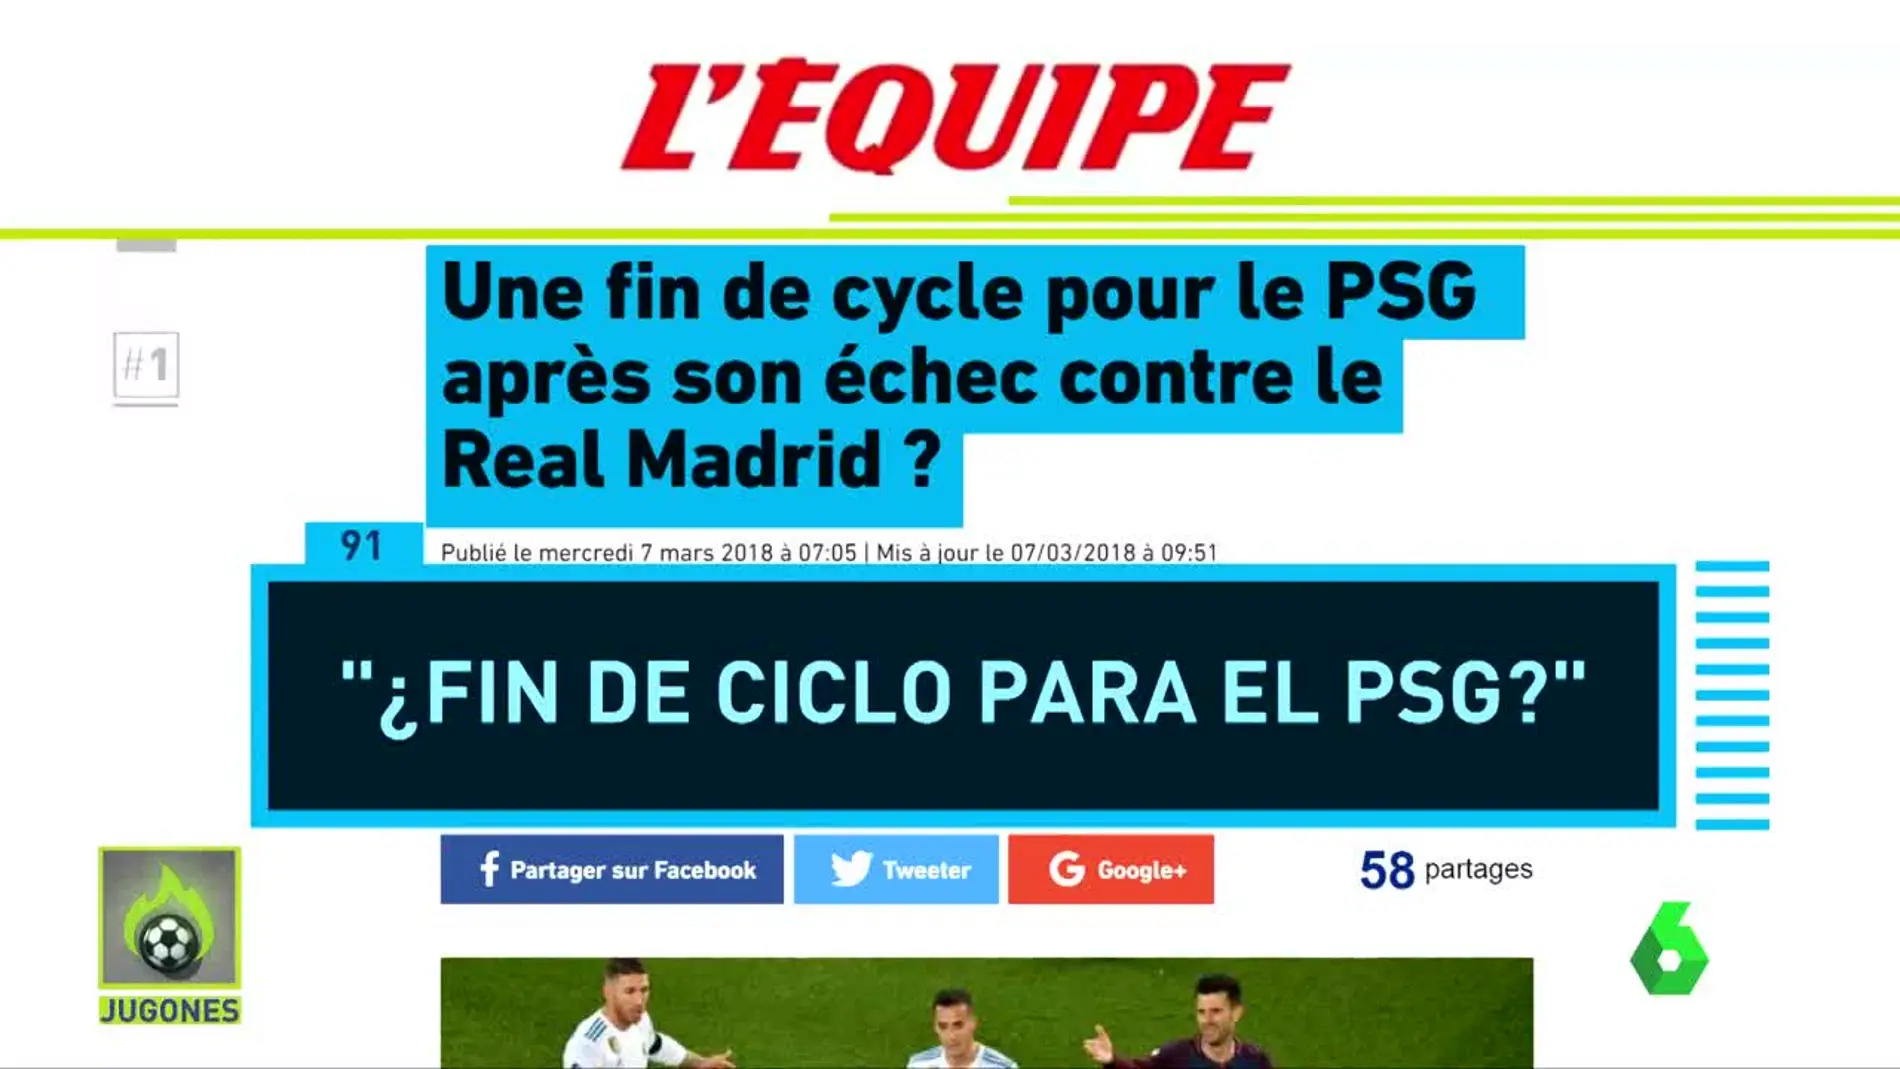 La prensa francesa, contra el PSG